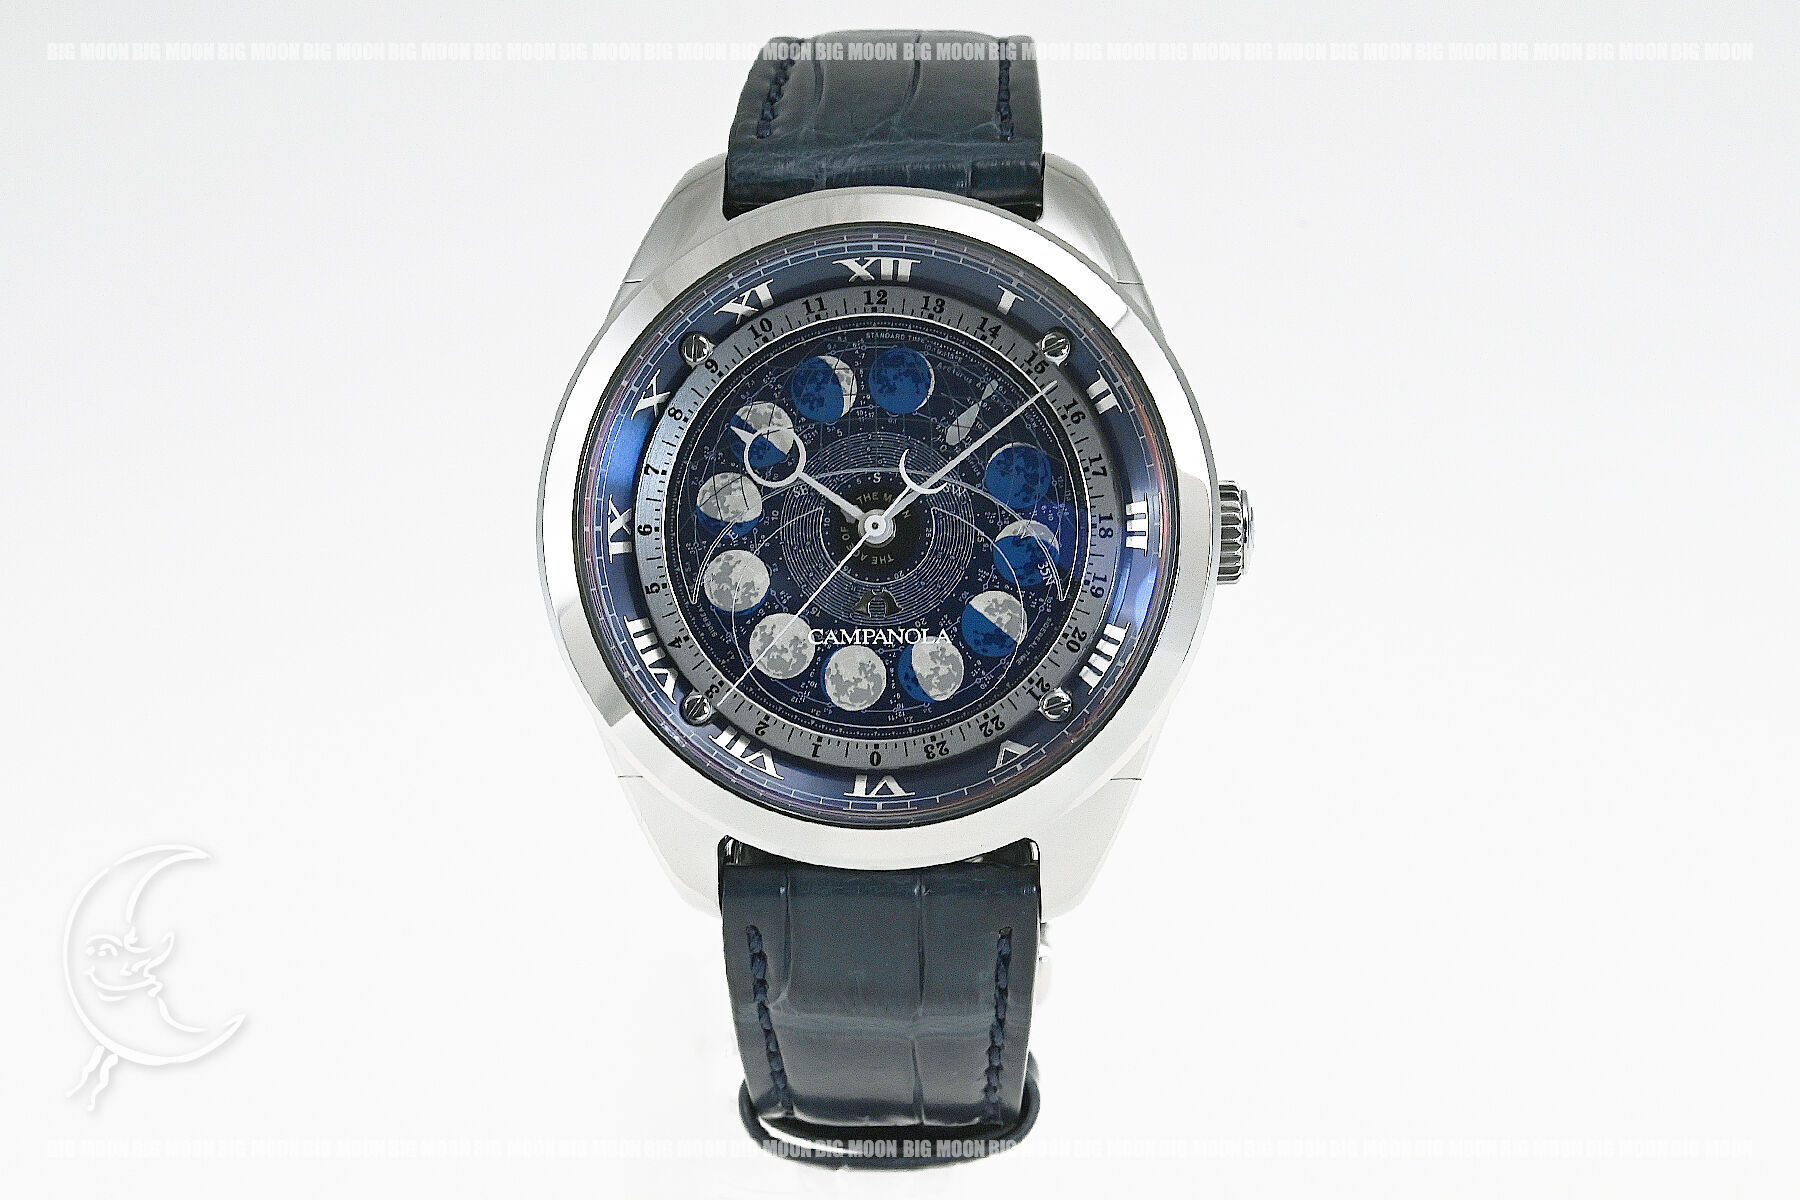 シチズン CITIZEN 腕時計 メンズ AA7800-02L カンパノラ コスモサイン COSMOSIGN クオーツ（CAL.4394） ブルーxブルー アナログ表示